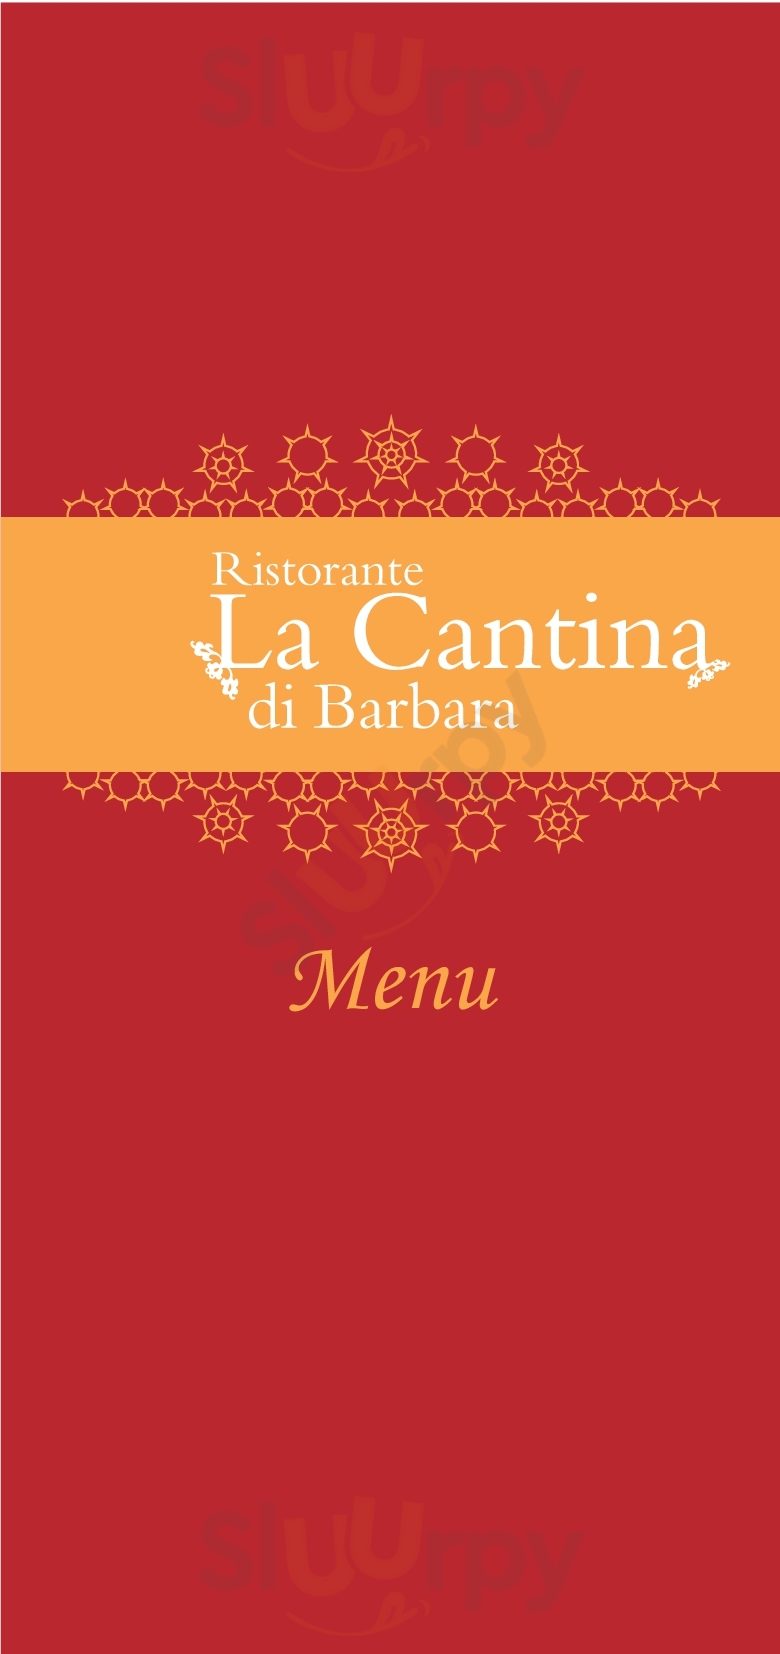 La Cantina di Barbara Mattarana menù 1 pagina